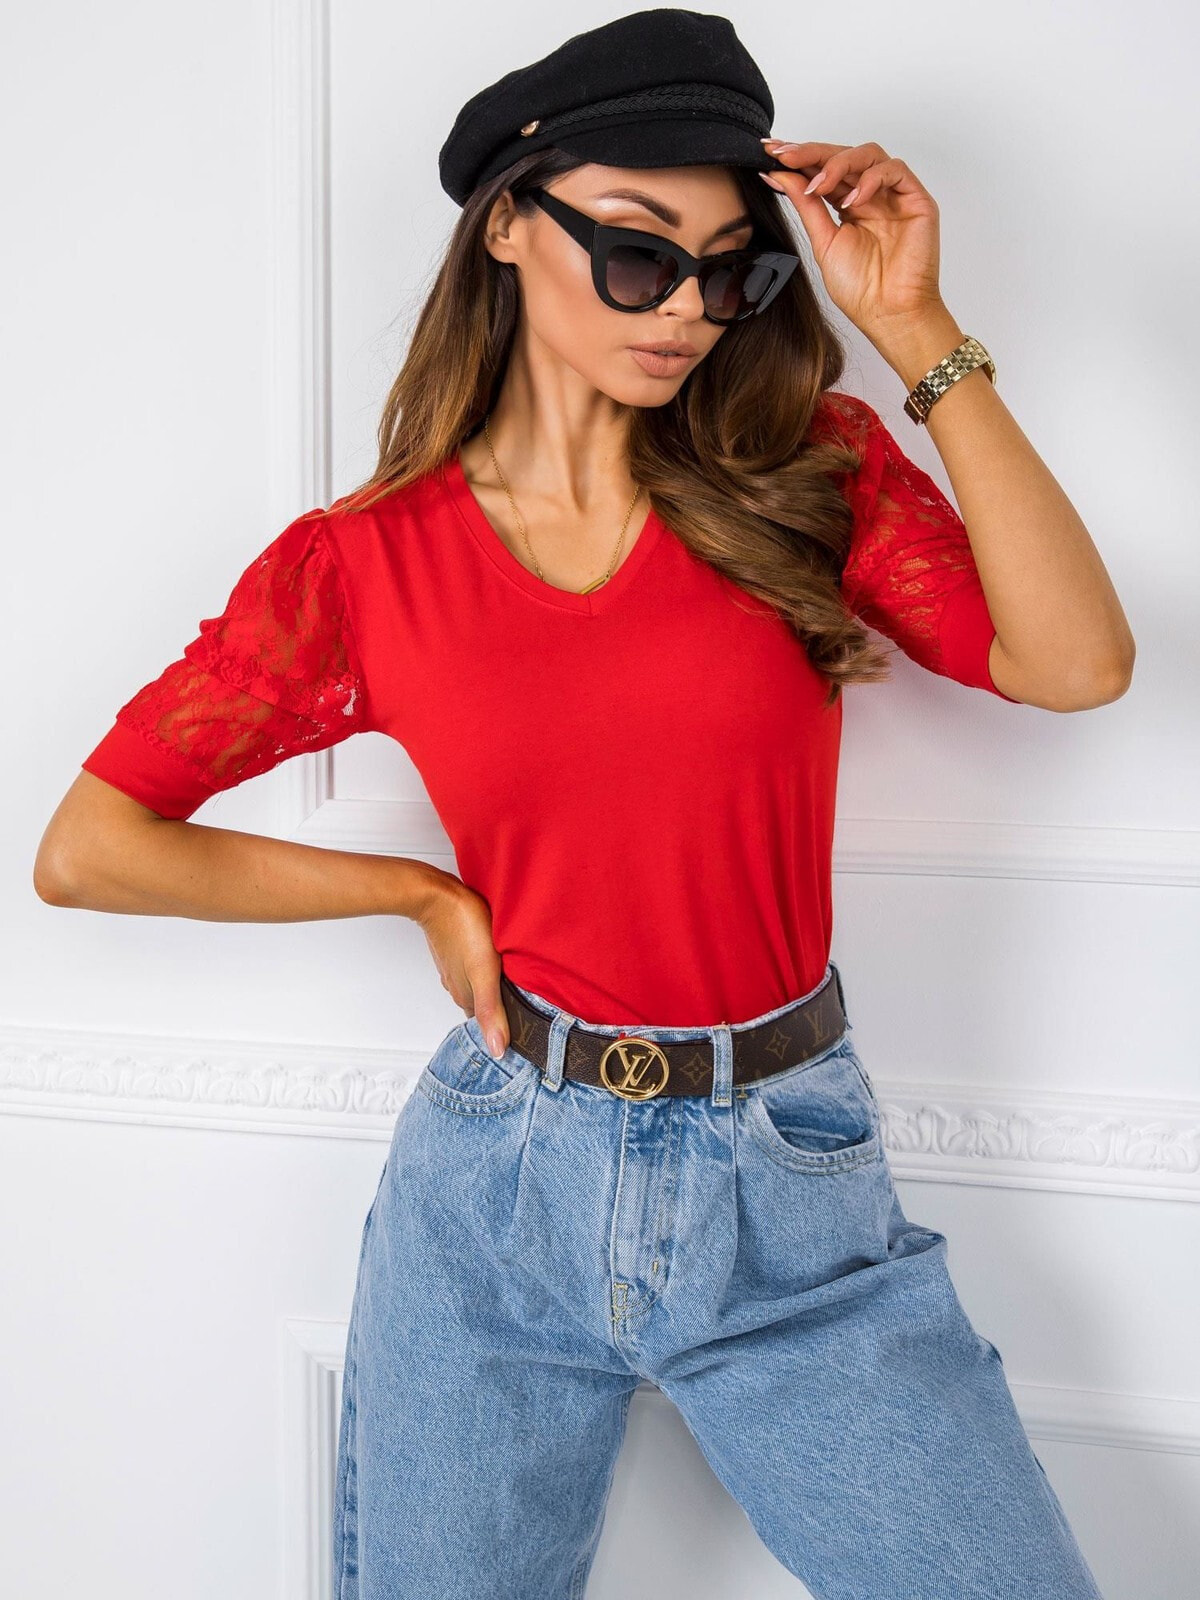 Женская блузка приталенного кроя с коротким рукавом красная Factory Price